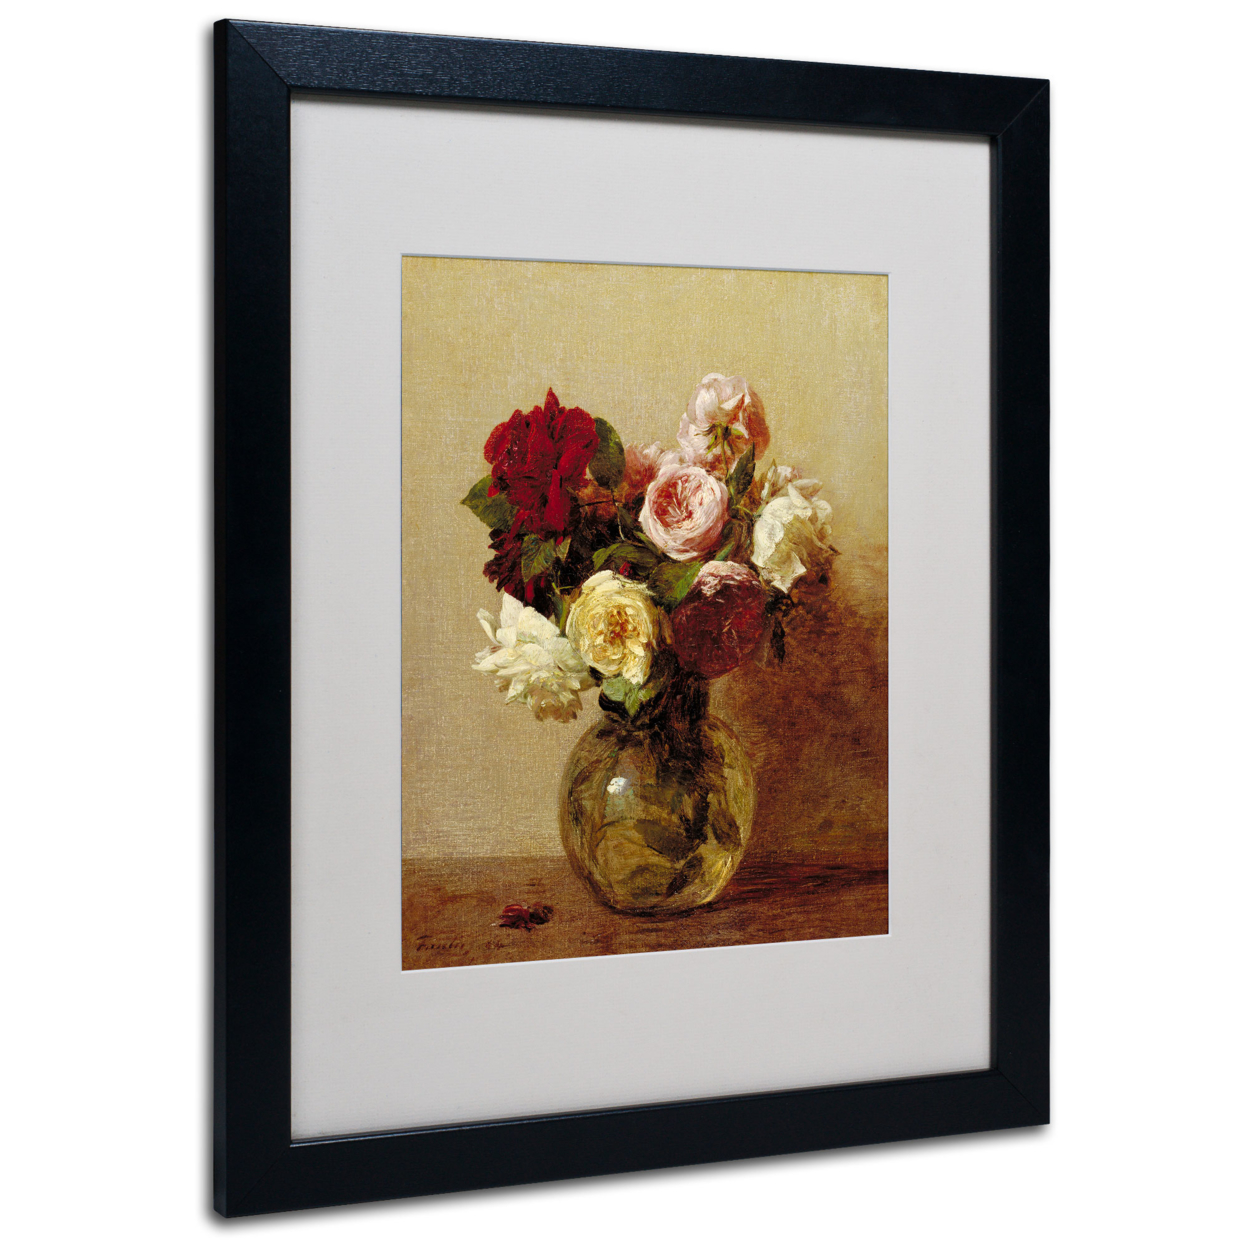 Henri Fantin Latour 'Roses 1884' Black Wooden Framed Art 18 X 22 Inches